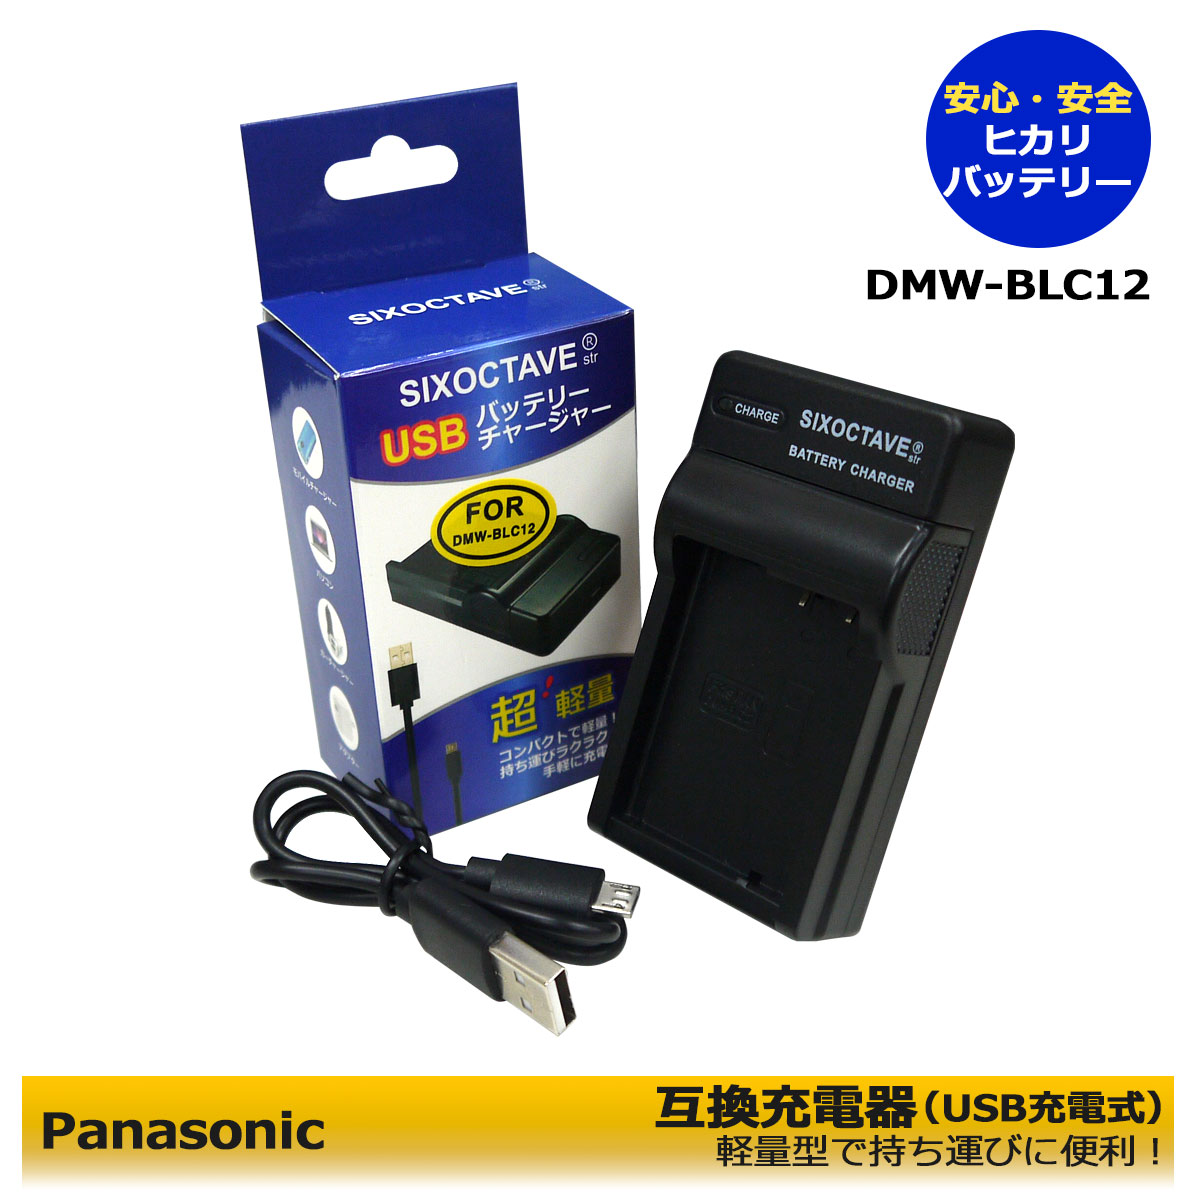 日本初の DMW-BLC12 互換バッテリー 1個 超軽量 USB Type C 急速 互換充電器 バッテリーチャージャー DMW-BTC6  DMW-BTC12 Panasonic パナソニック